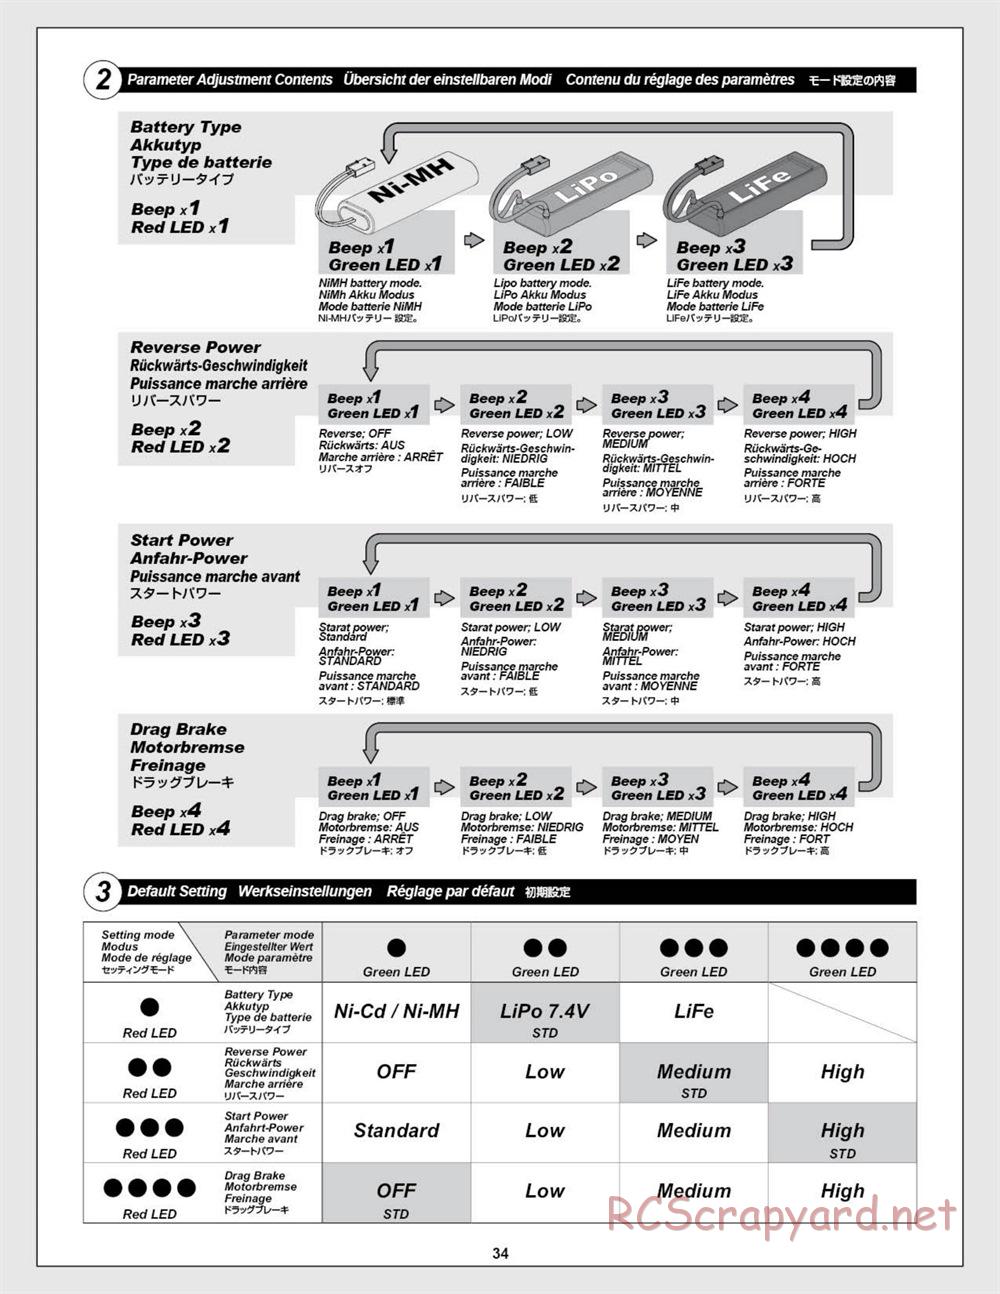 HPI - E-Firestorm-10T - Manual - Page 34